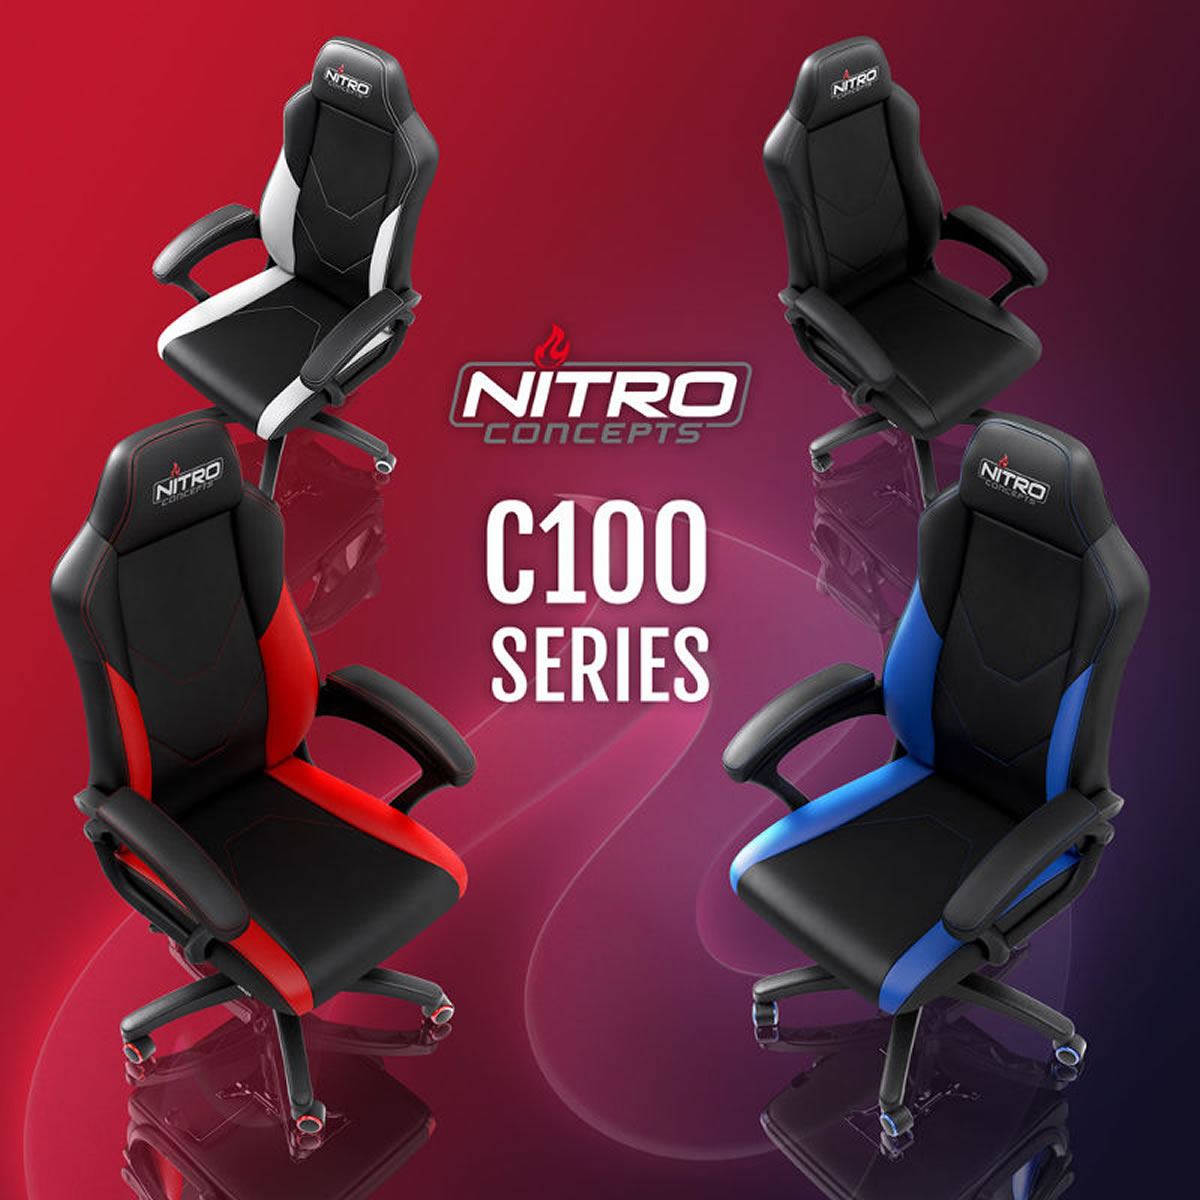 nouveau siege-gamer Nitro Concepts C100